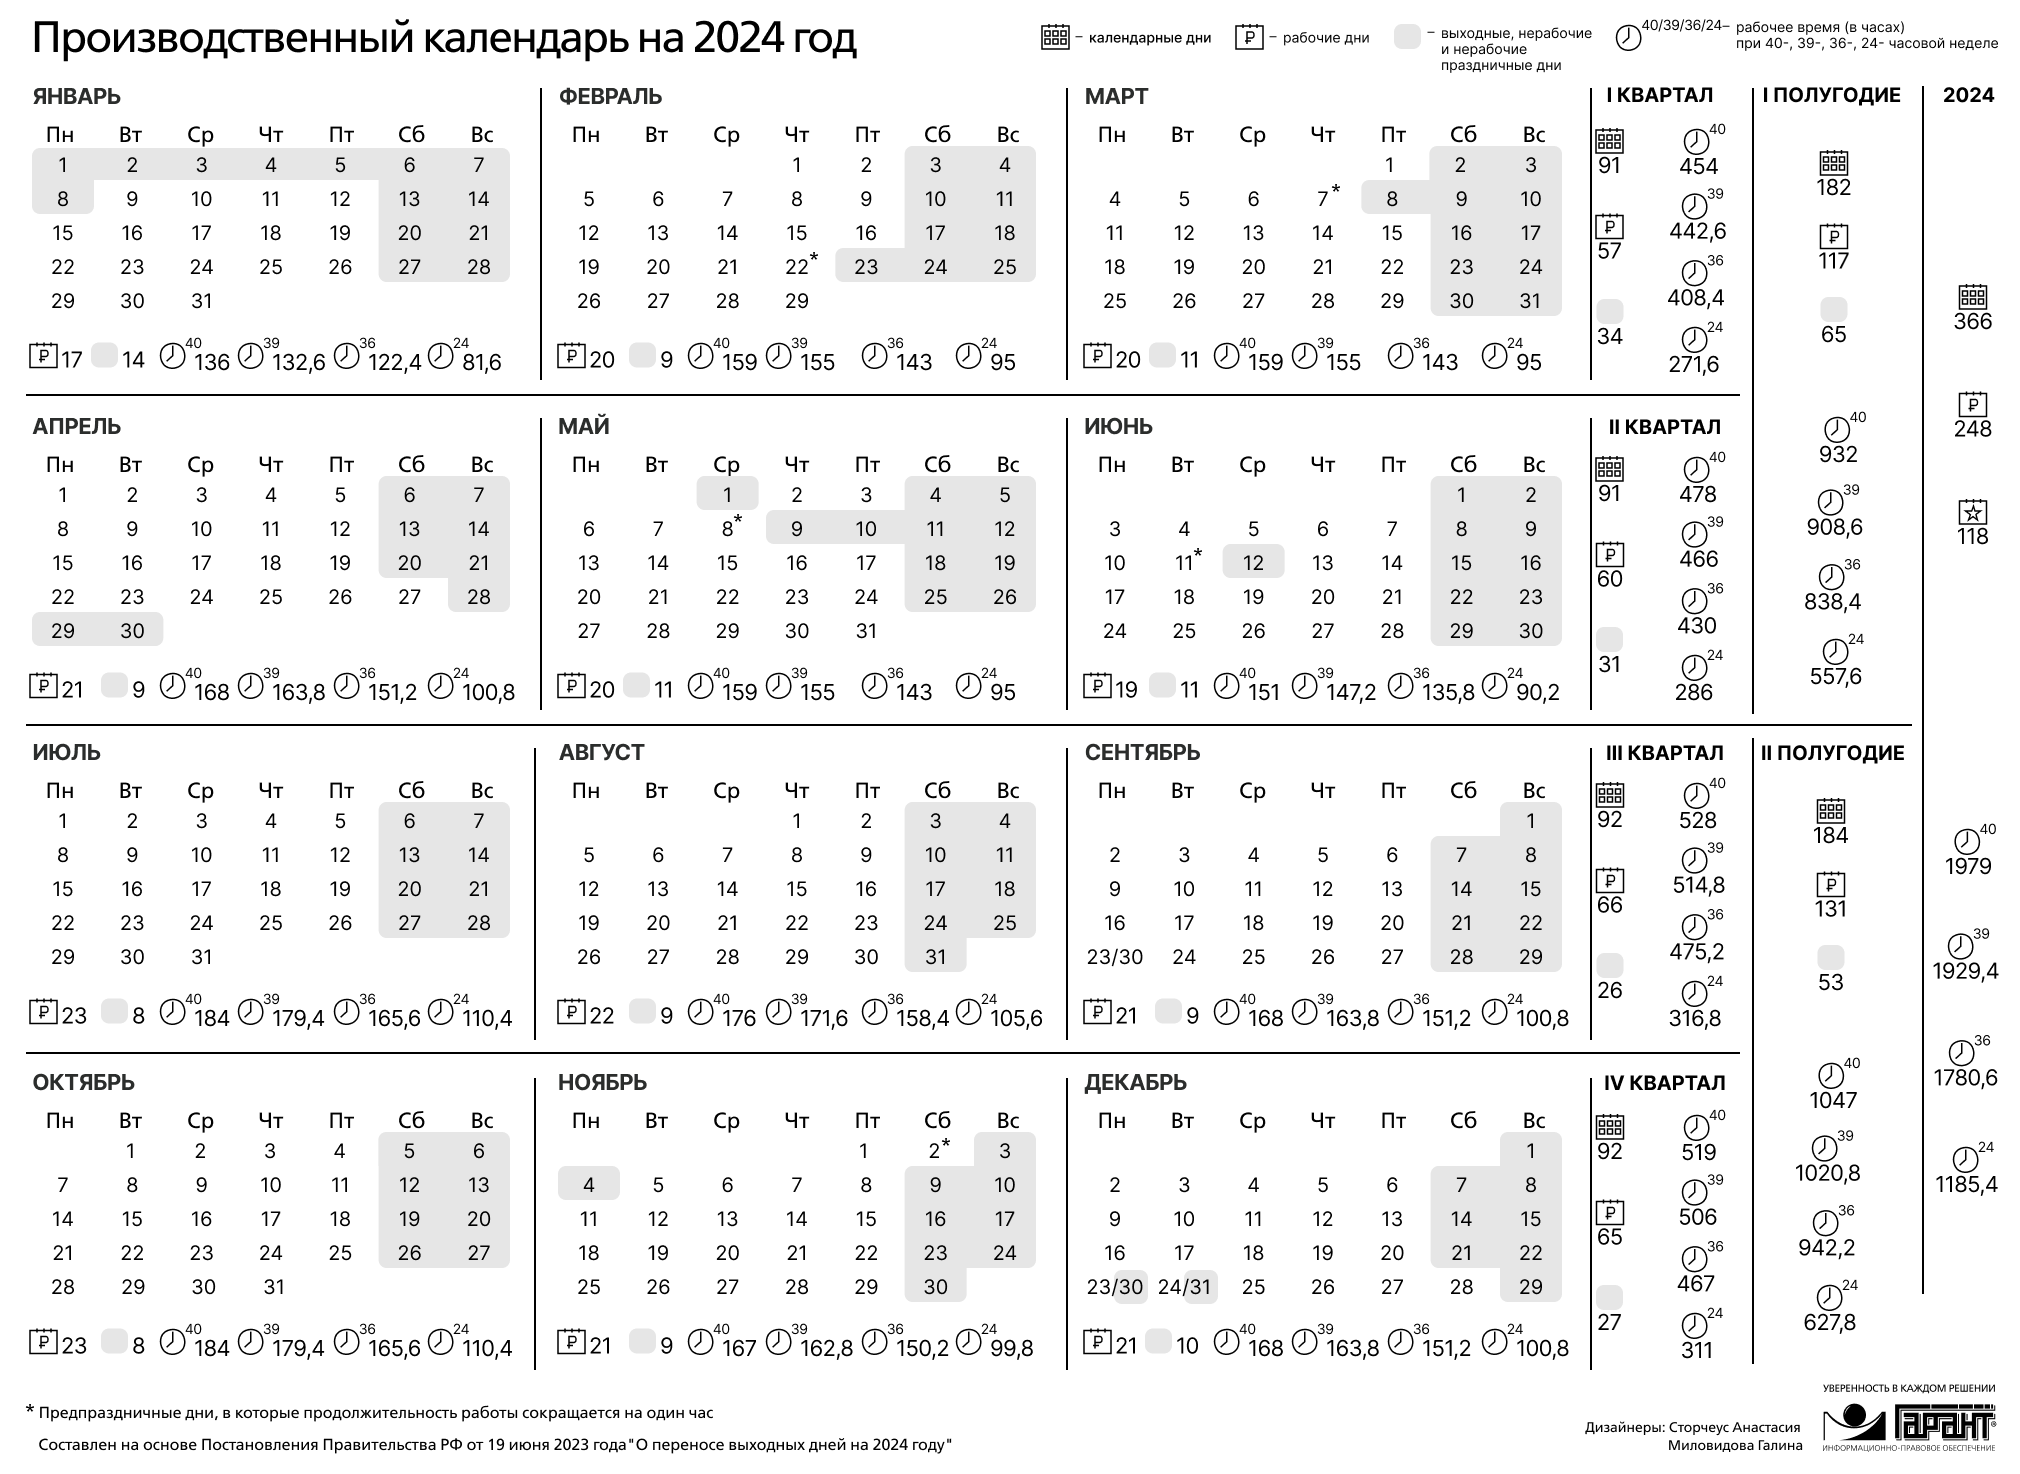 Выходные в 2024 г в россии. Праздничные дни 2024 года в России производственный календарь. Календарь на 2024 год с праздниками и выходными производственный РФ. Производственный календарь на 2024 го од. Зводственный календарь на 2024.